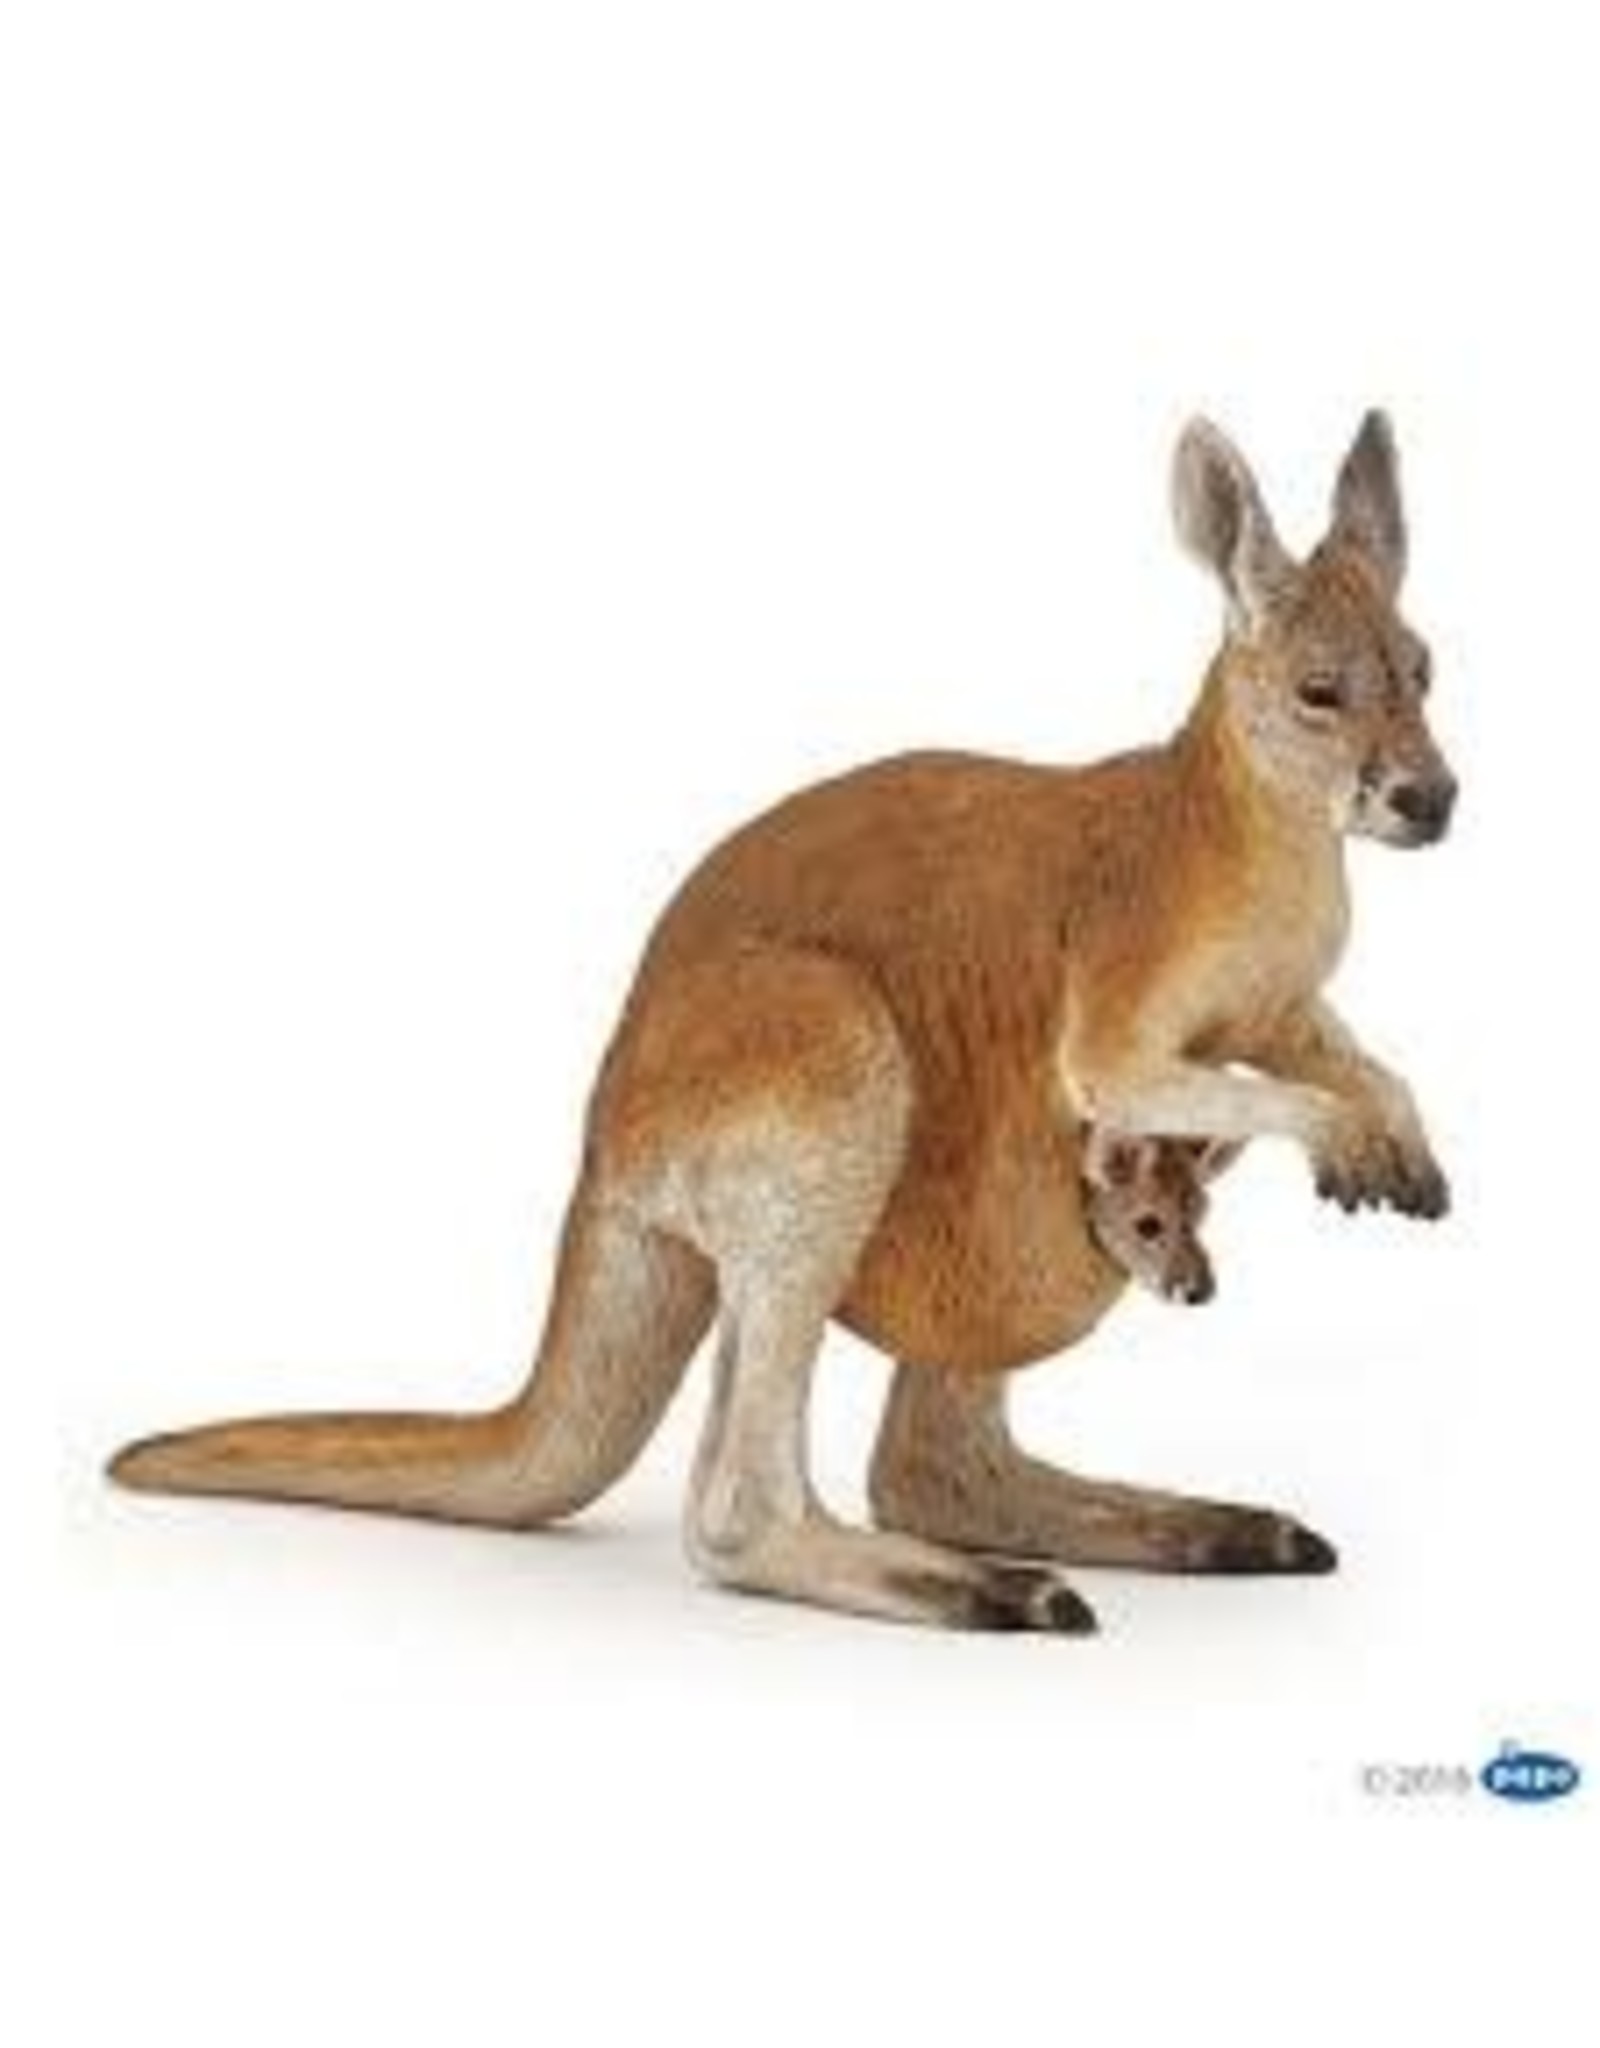 Kangaroo with Joey